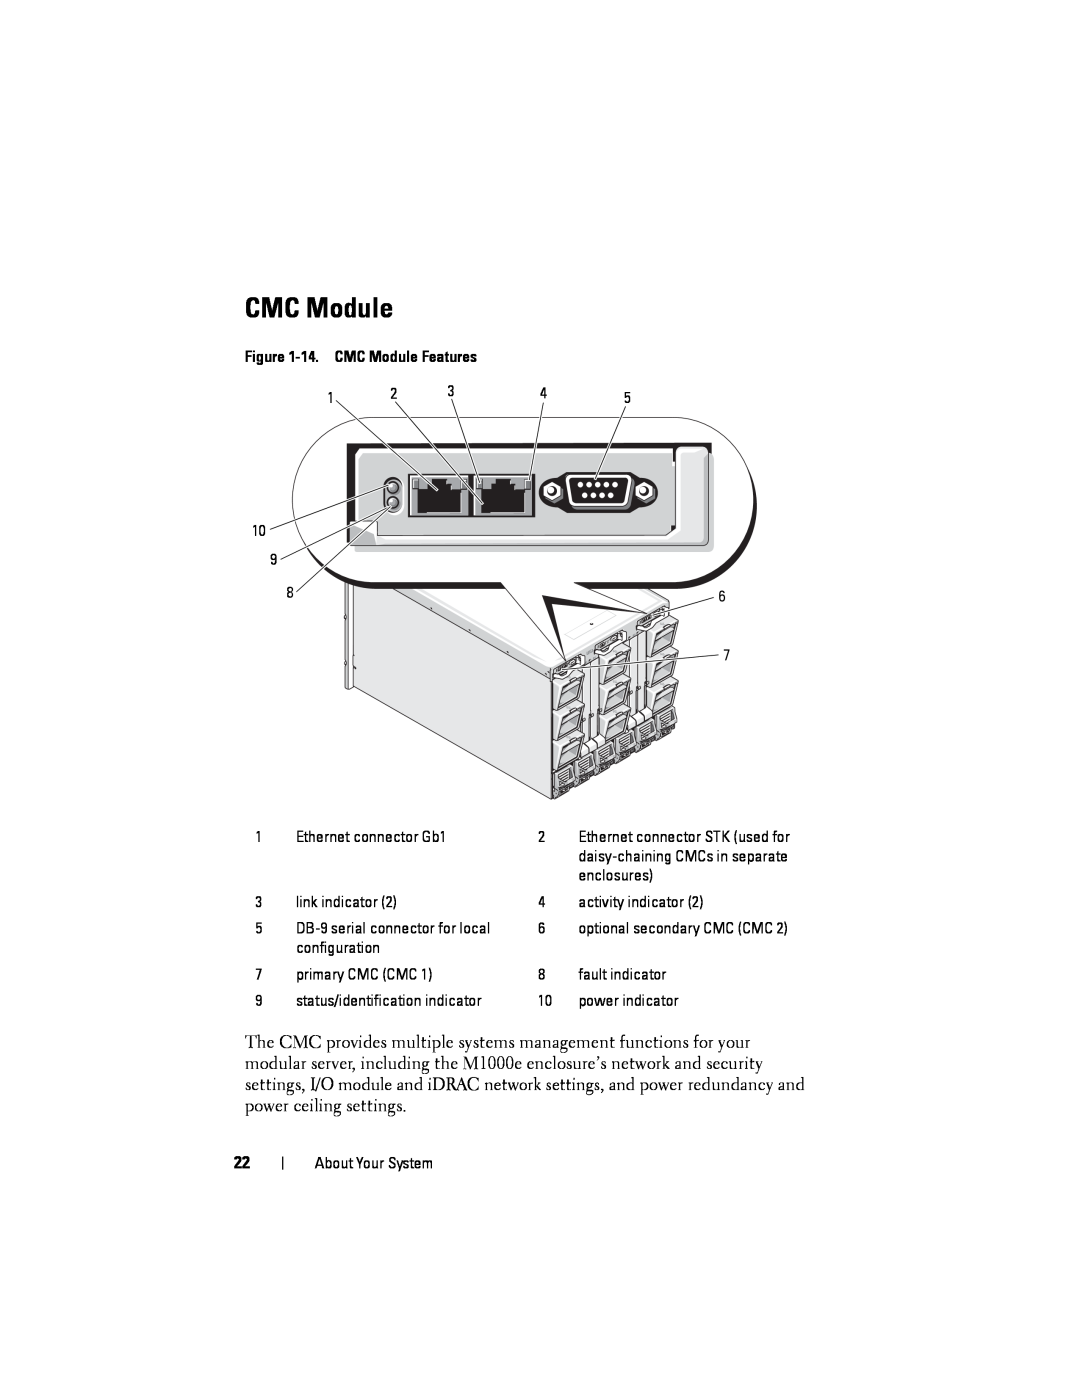 Dell M1000E manual 14. CMC Module Features 